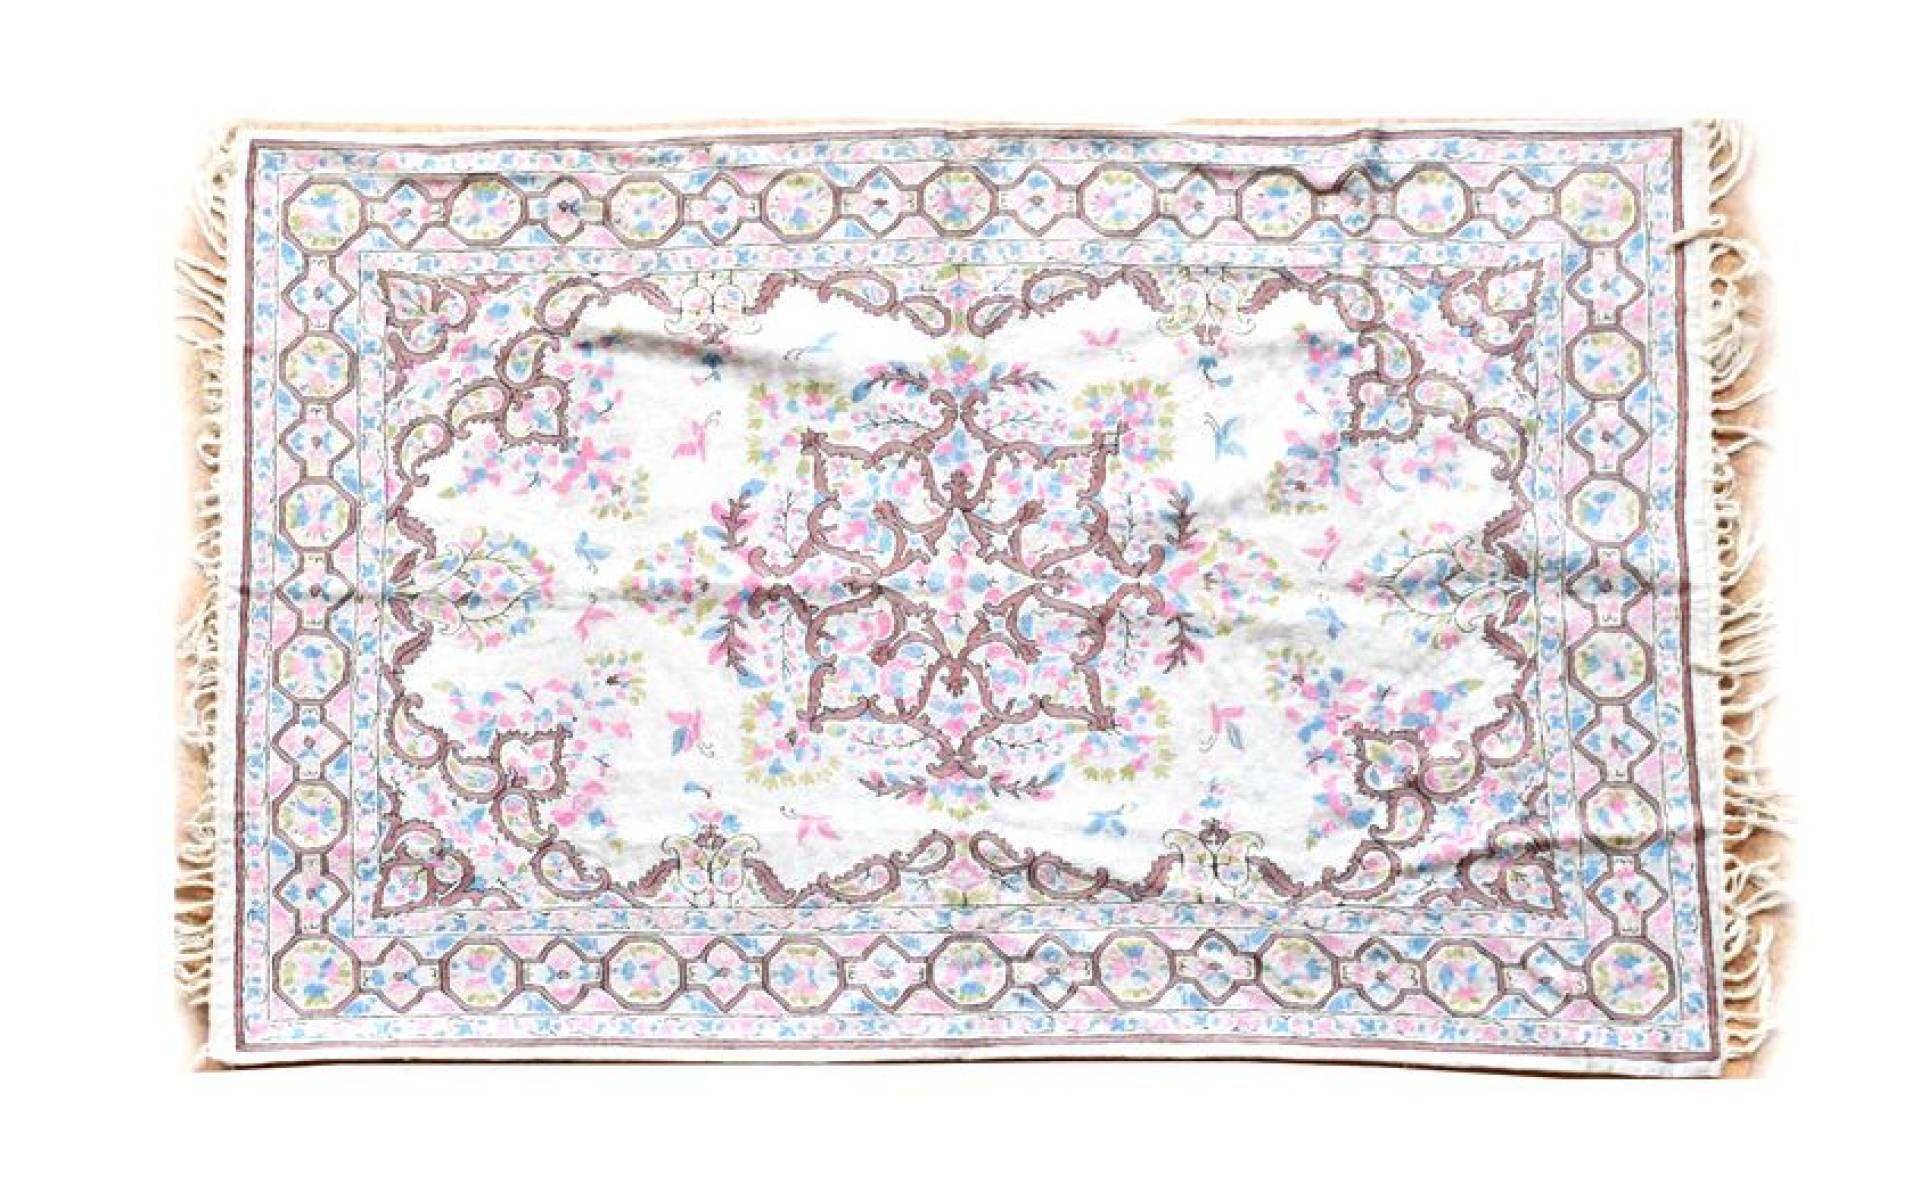 Ručne vyšívaný koberec/tapiséria, výšivka z hodvábu, 180x120cm